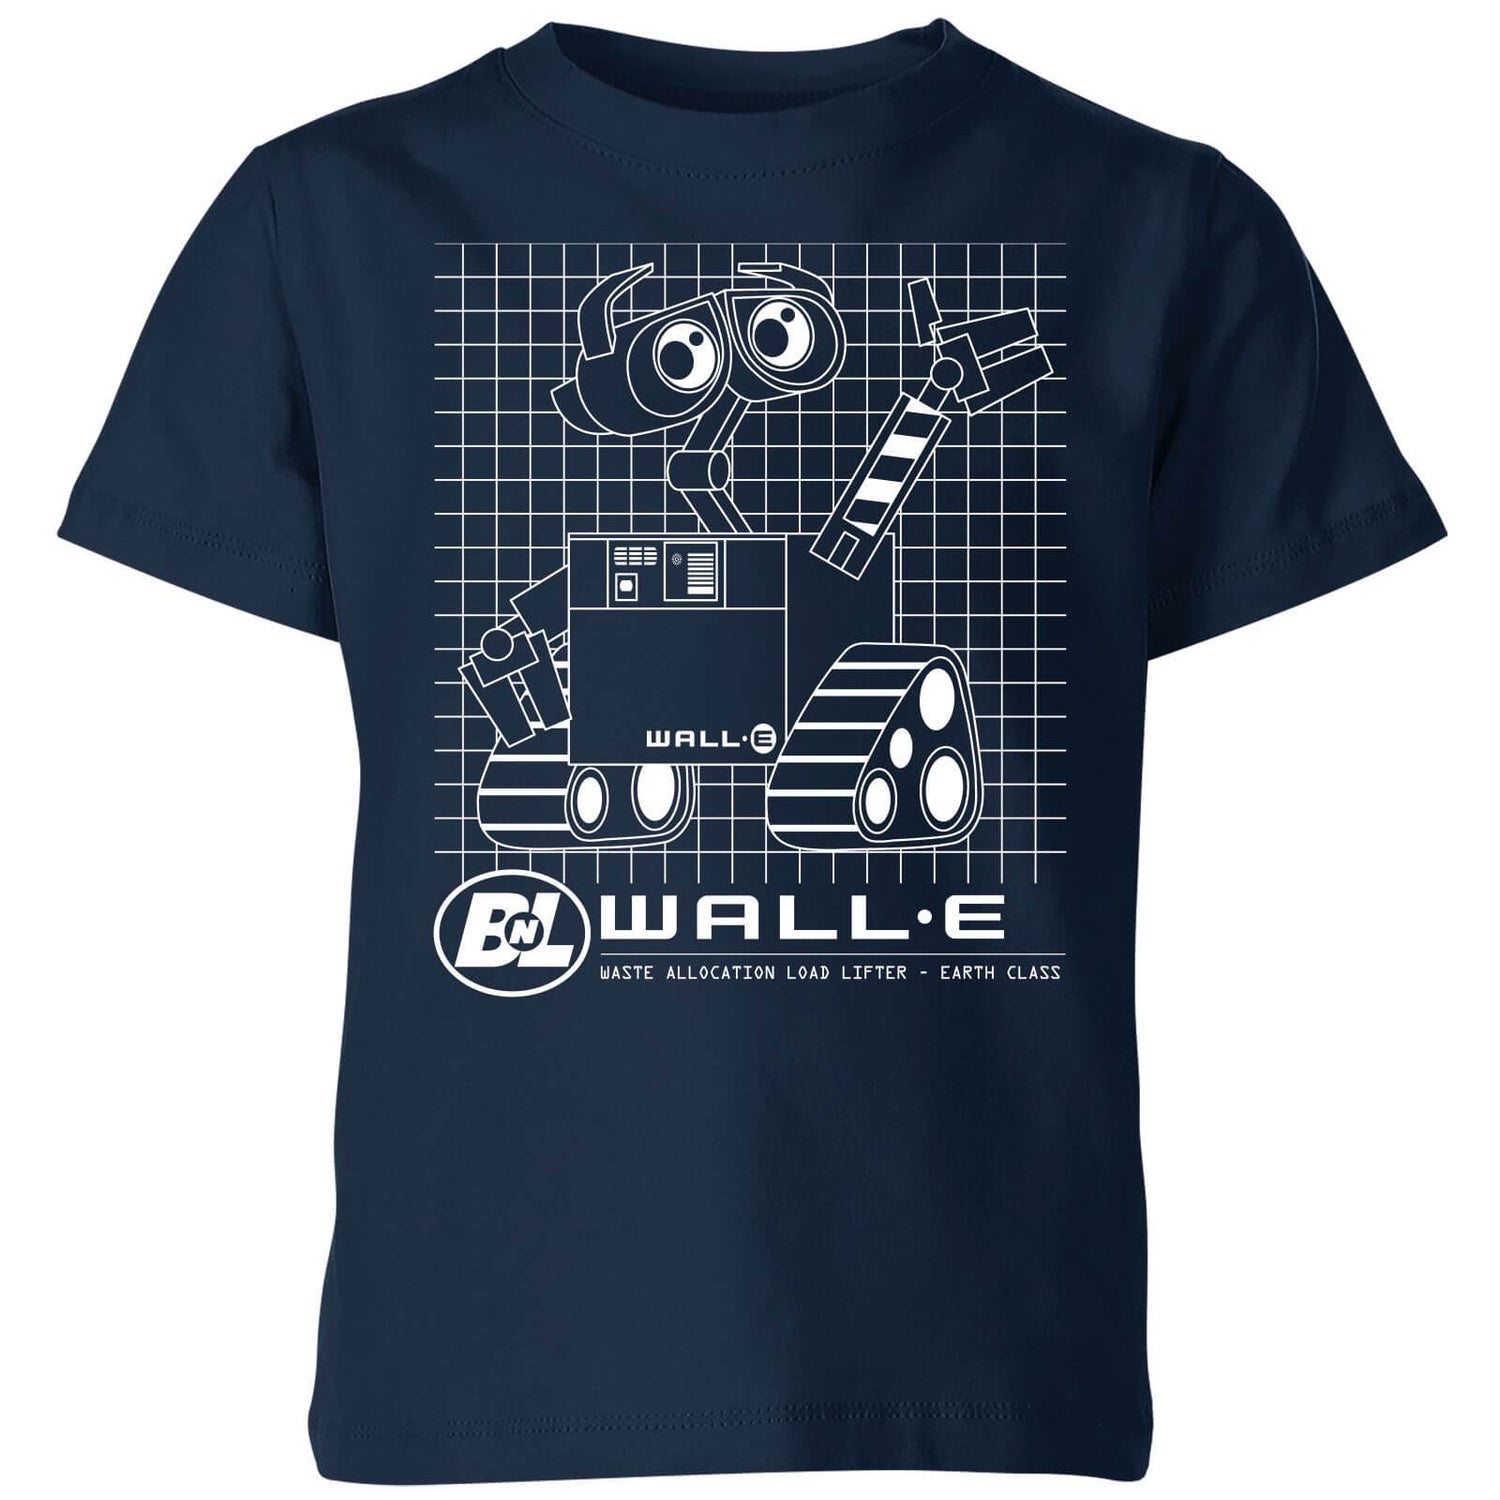 Wall-E Schematic Kids' T-Shirt - Navy